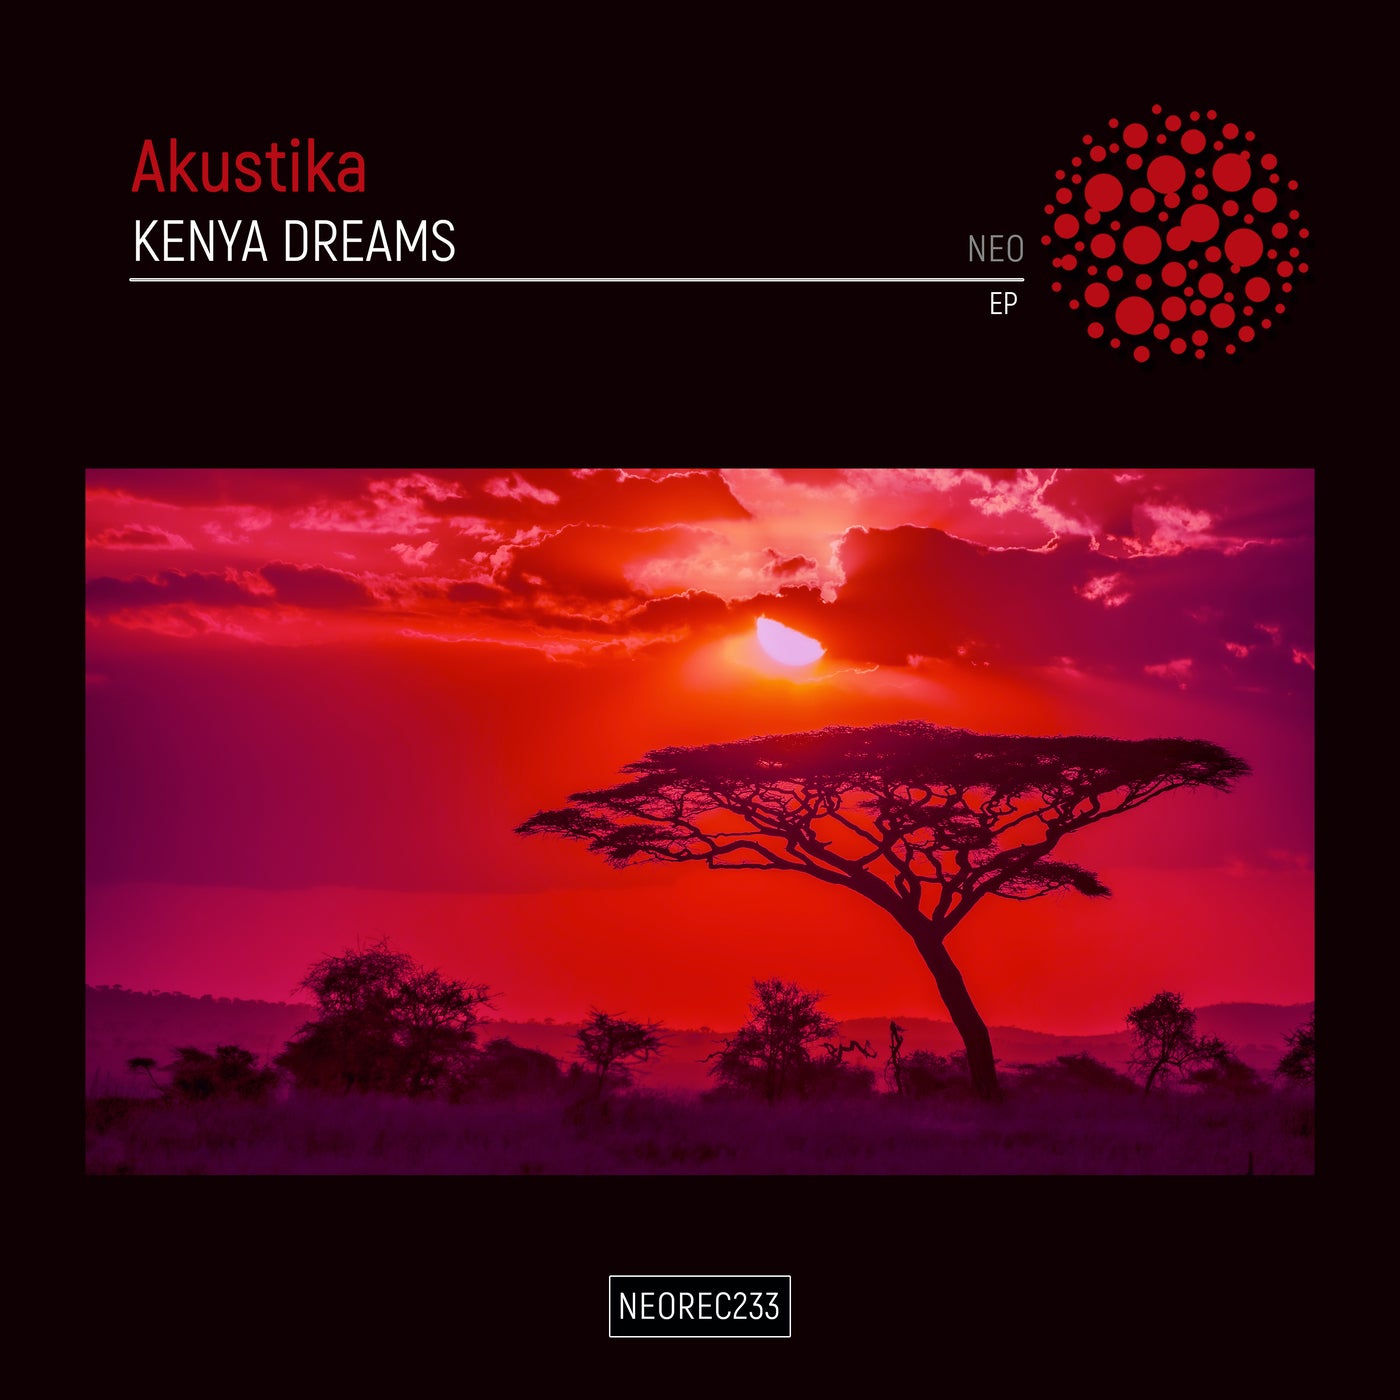 Akustika – Kenya Dreams EP [NEOREC233]